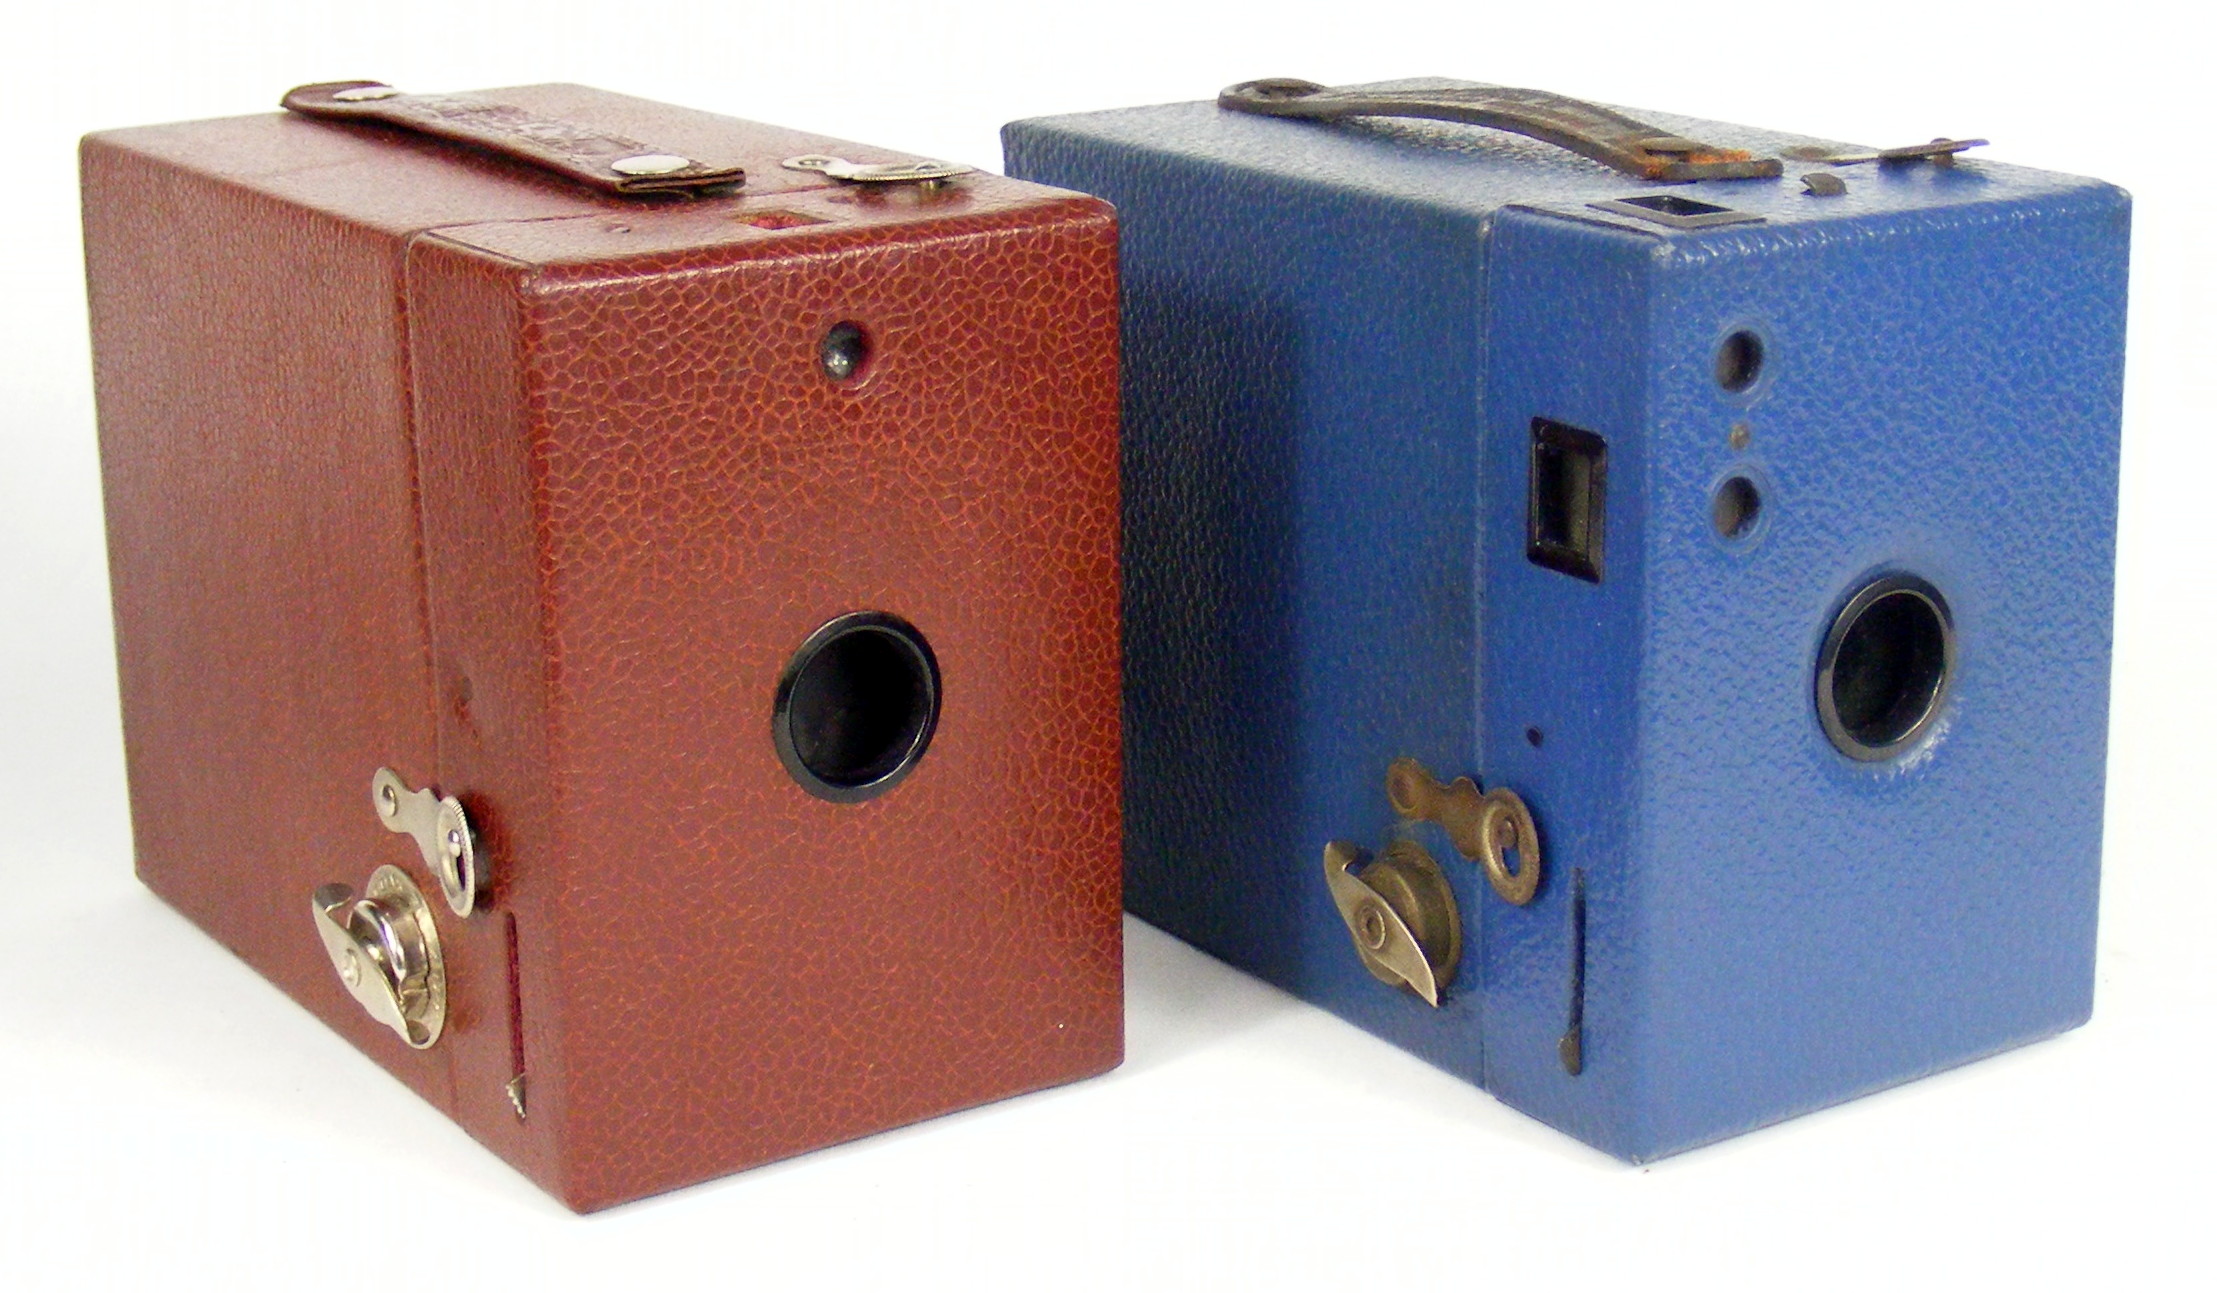 Image of Rainbow Hawk-Eye No 2 box cameras (US and UK models)